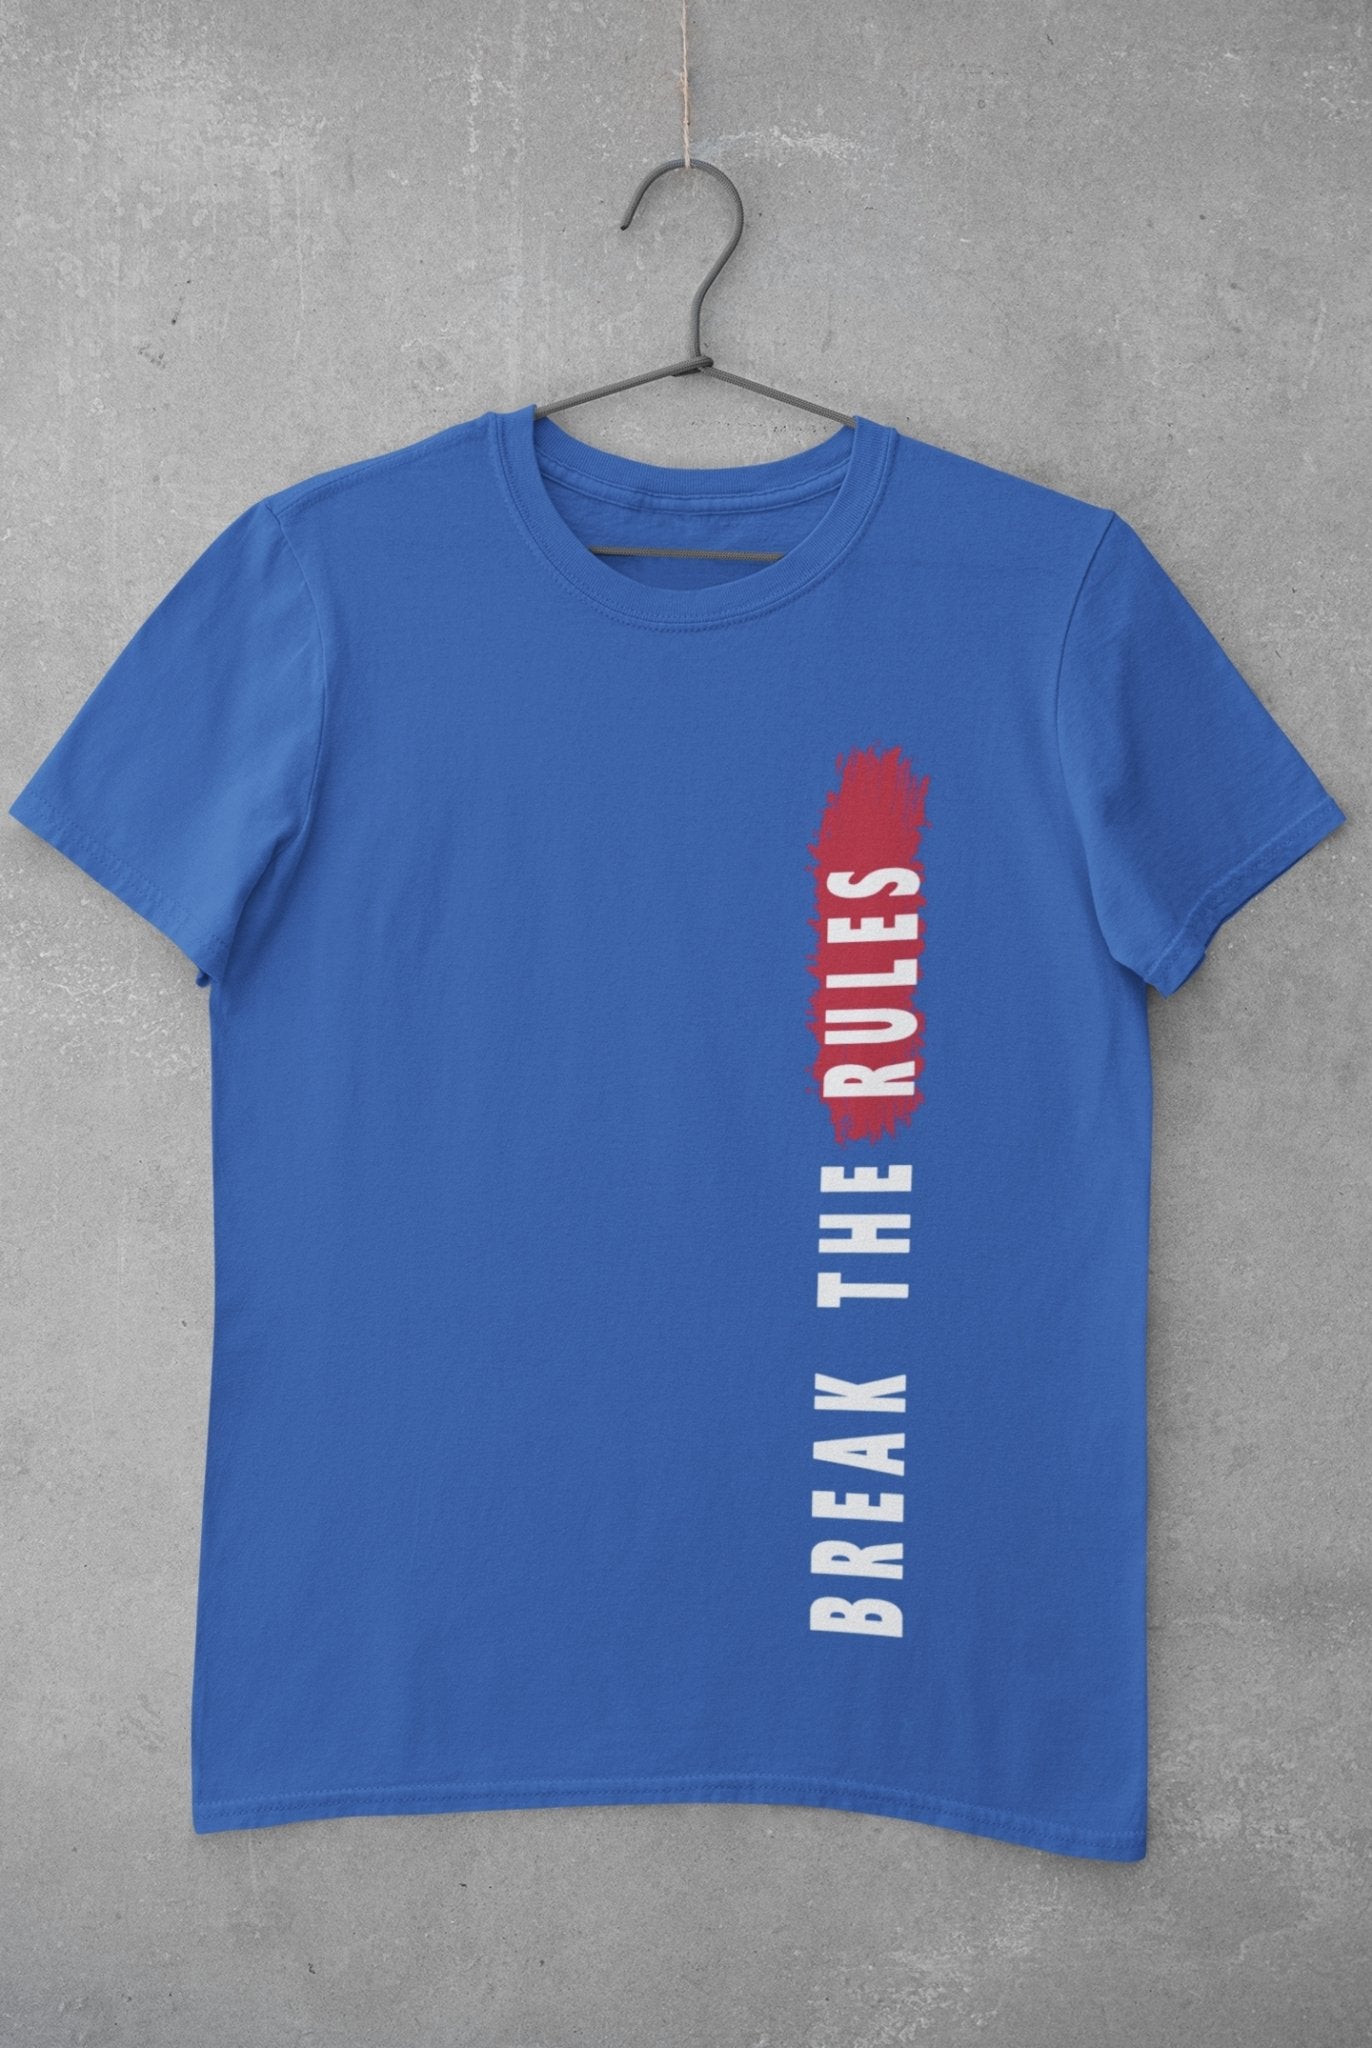 Break The Rules Women Half Sleeves T-shirt- FunkyTeesClub - Funky Tees Club